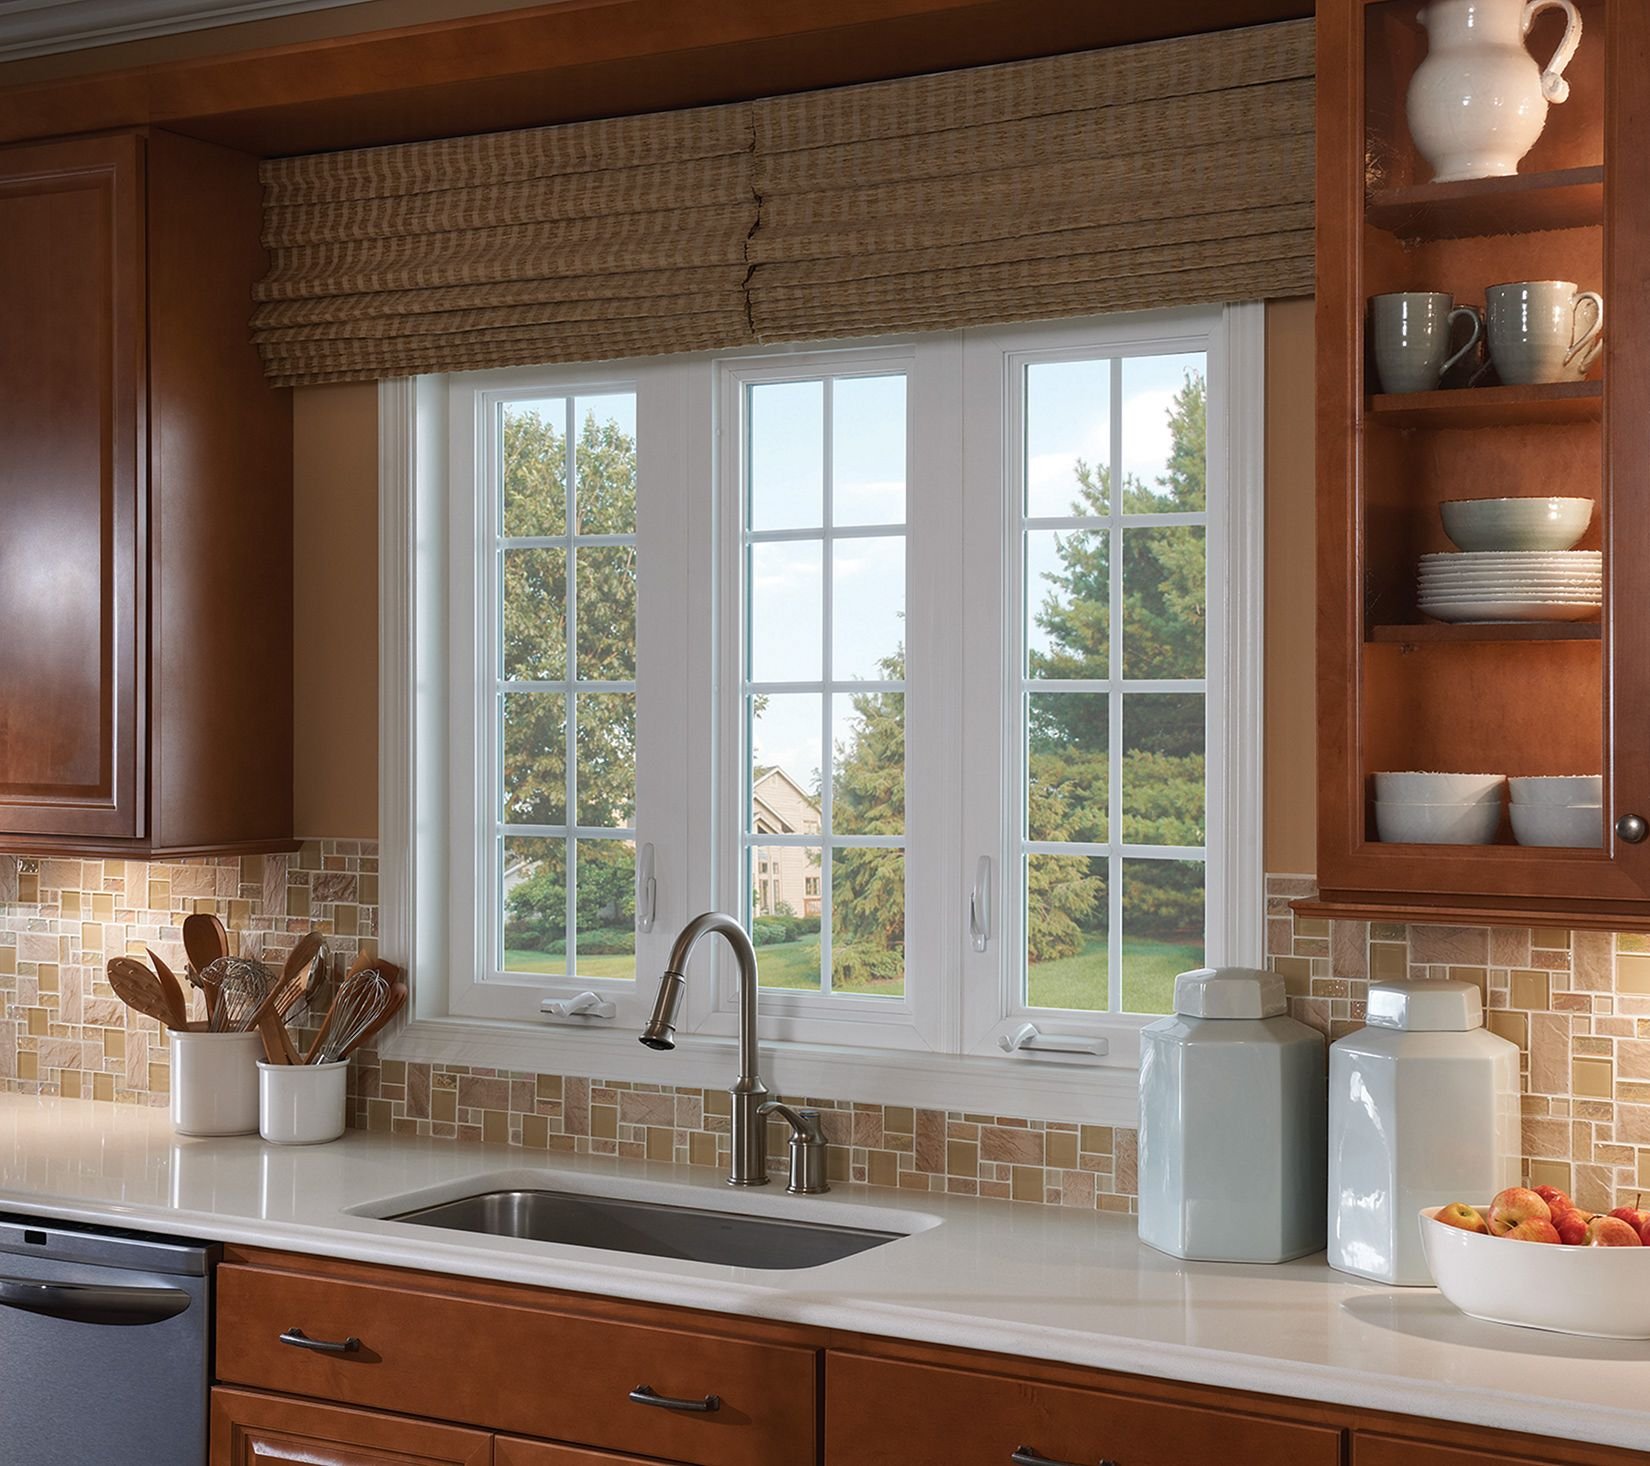 Окна на кухне купить. Кухня с окном. Планировка кухни с окном. Планировка кухни с большим окном. Красивое окно на кухне.